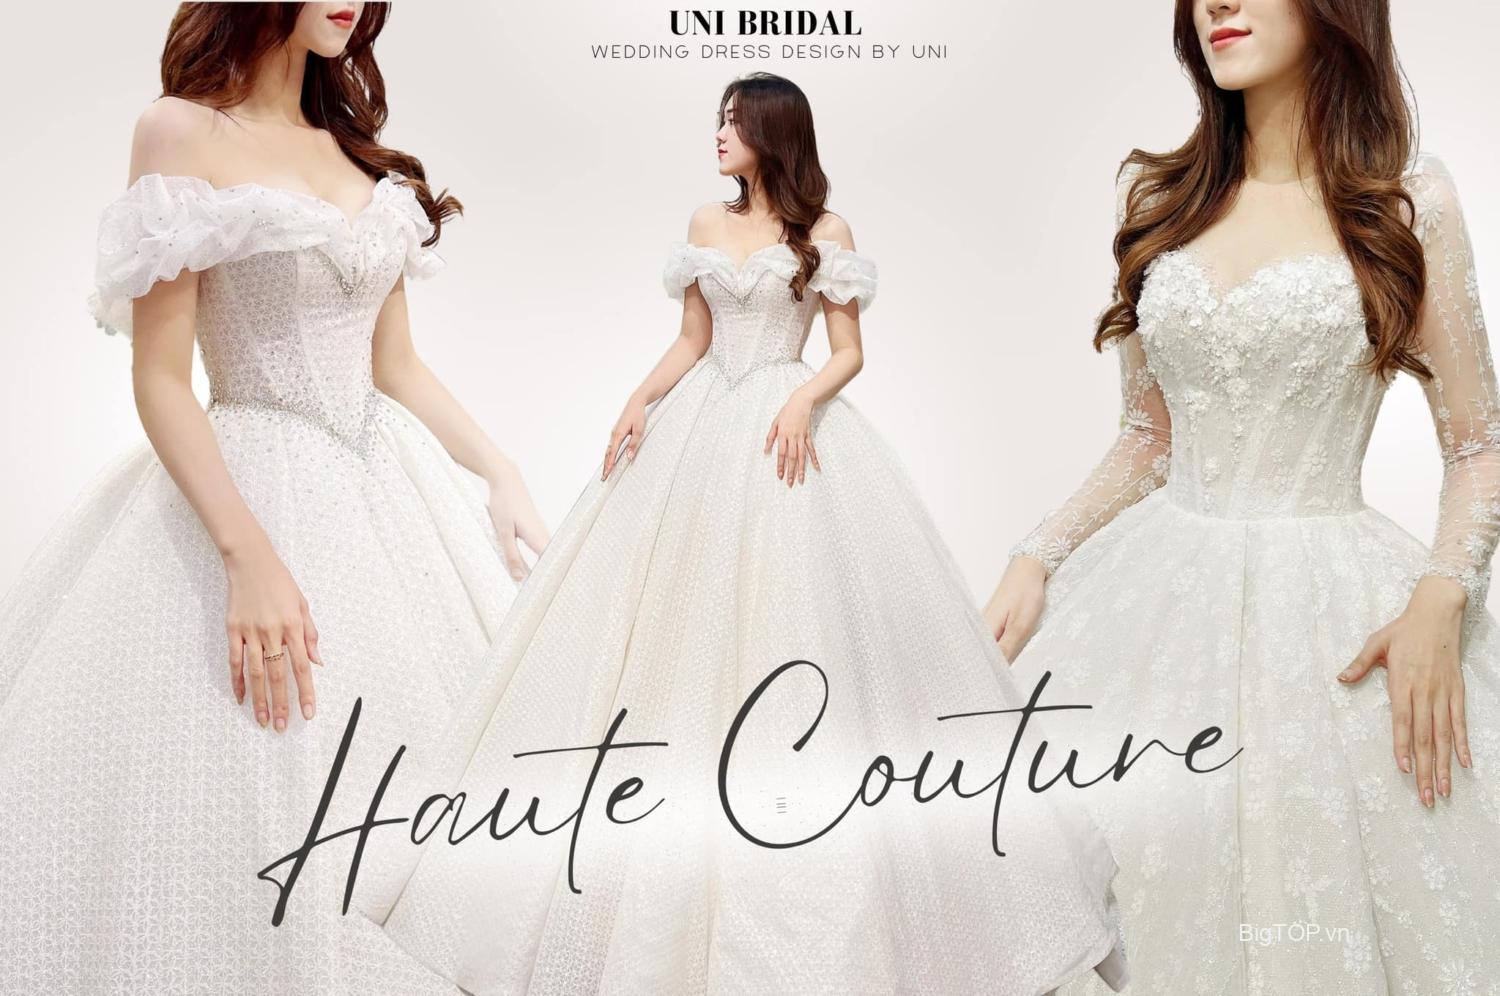 Top 10 tiệm áo cưới đẹp giá tốt, uy tín nhất ở TP HCM - Tin khuyến mãi -  HappyWedding.vn